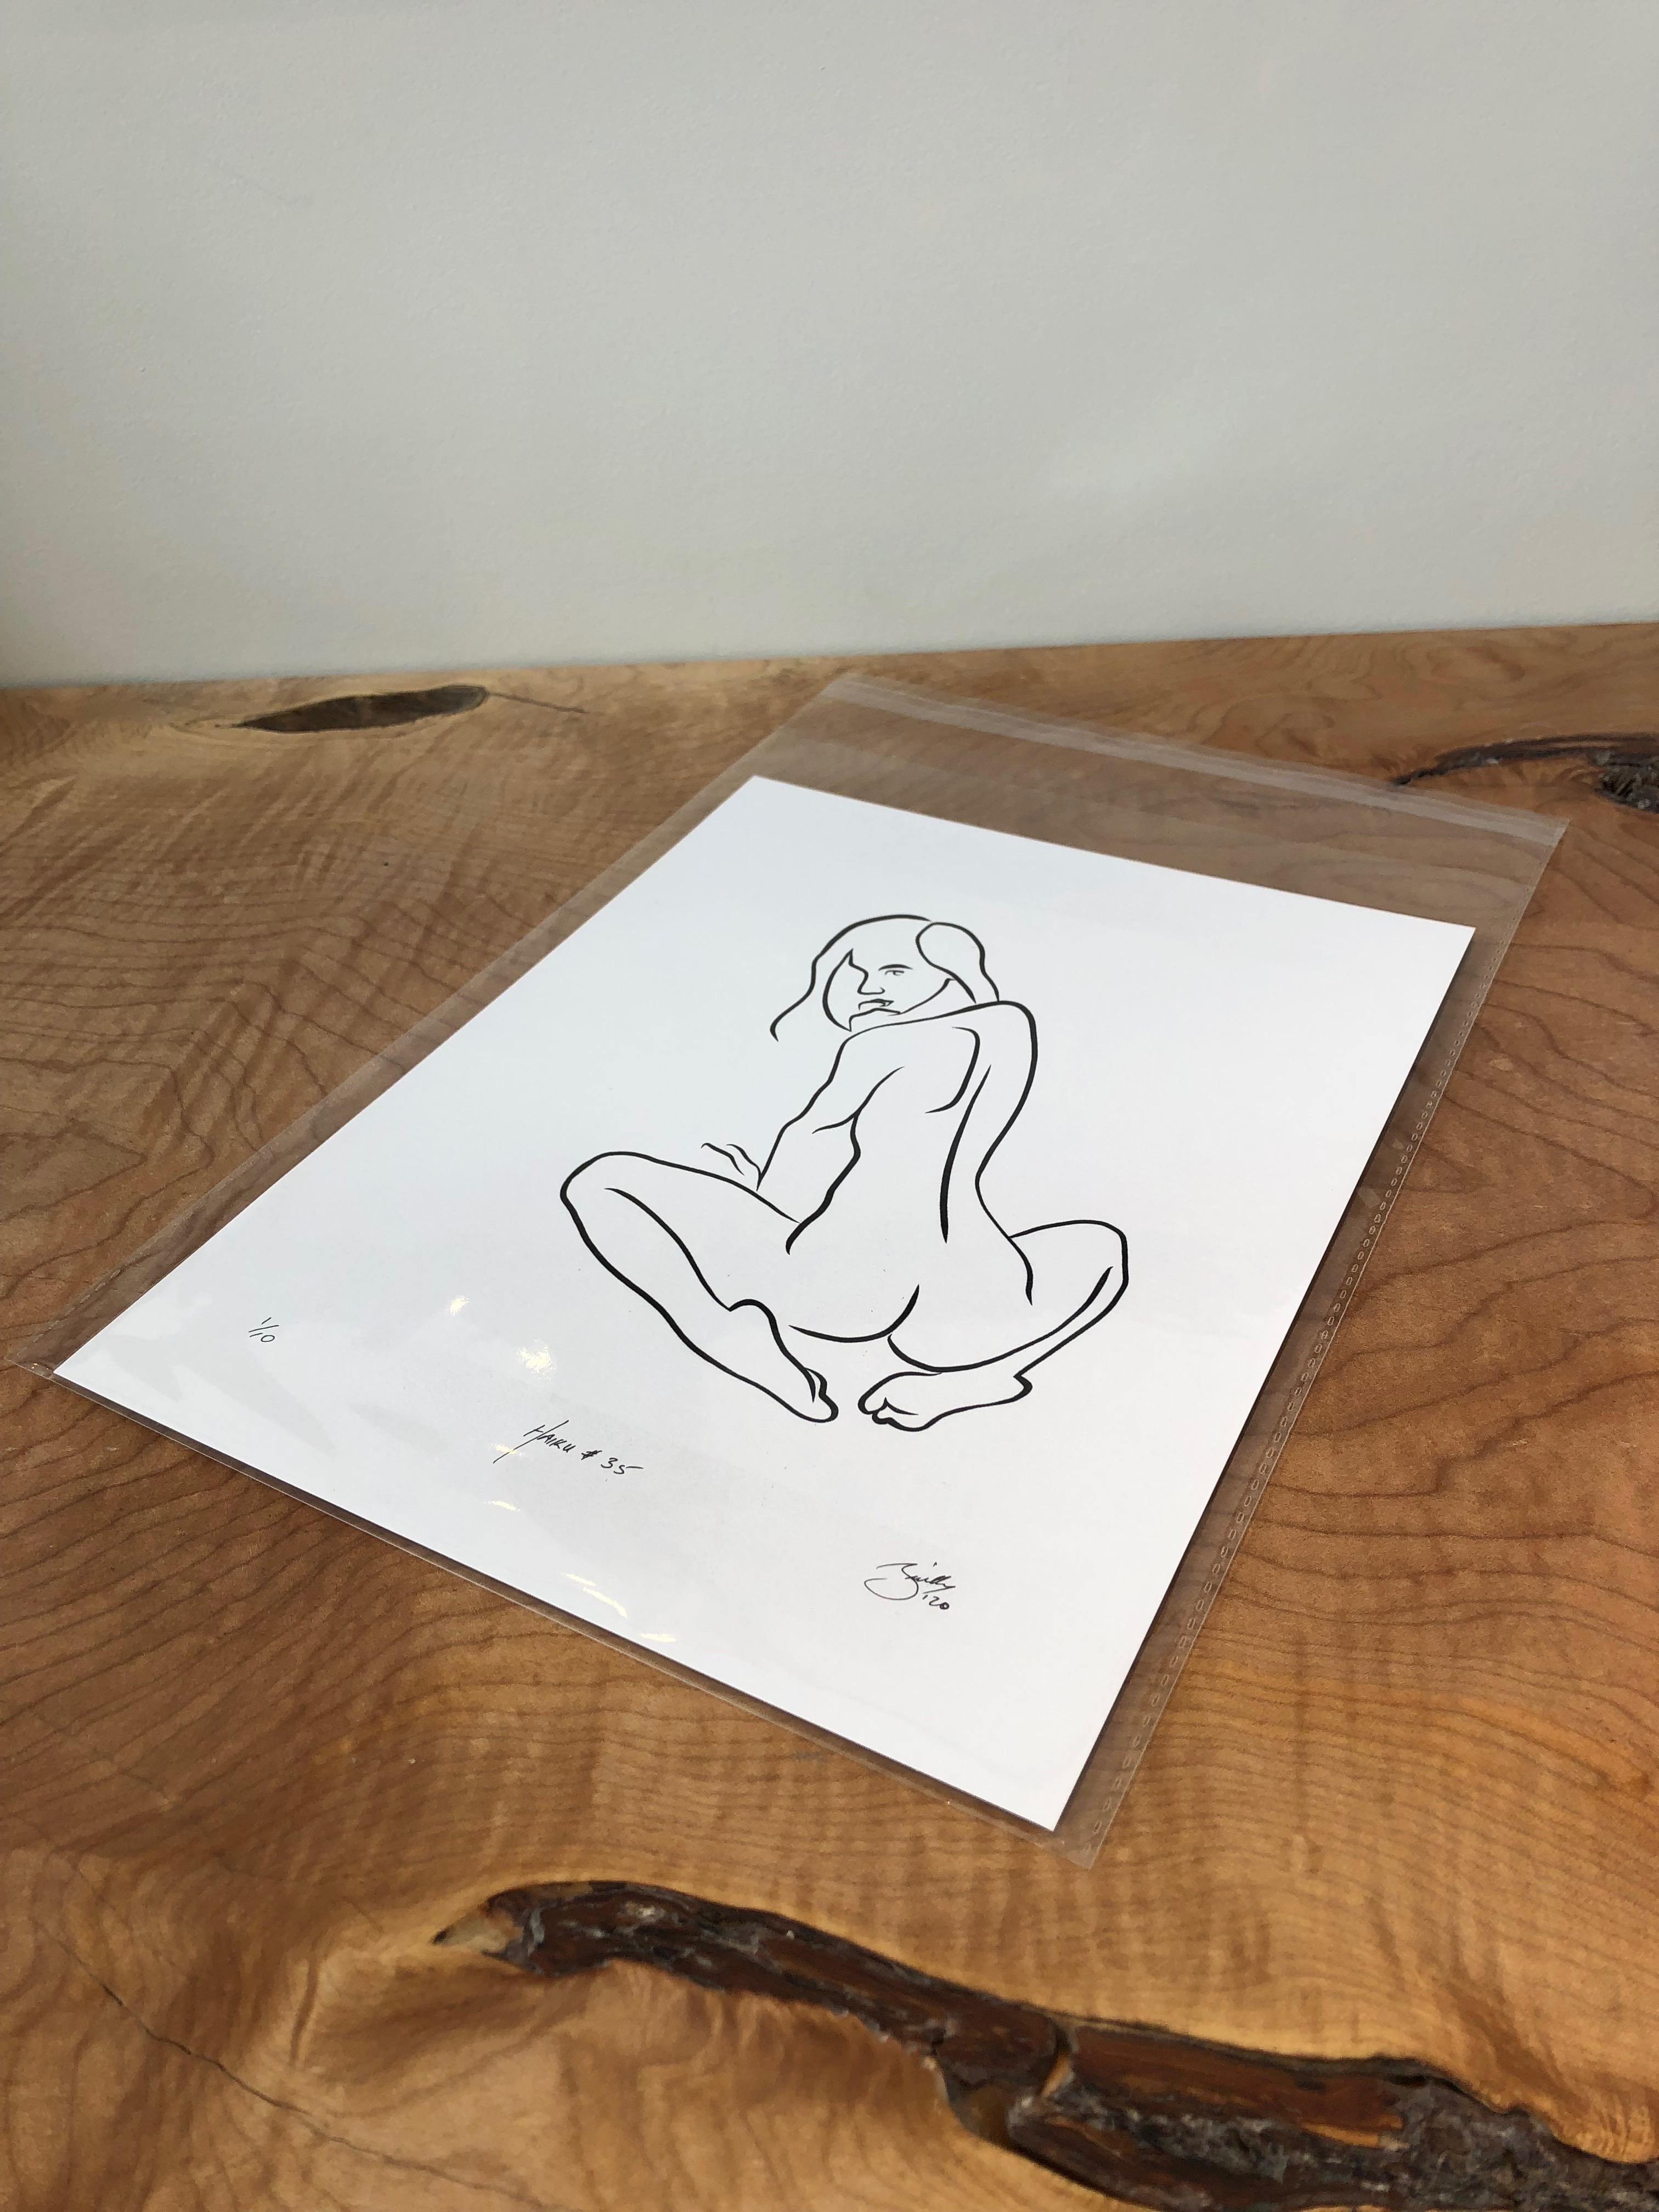 Haiku #35, 1/50 - Digital Vector Drawing Seated Female Nude Woman Figure Looking - Print by Michael Binkley